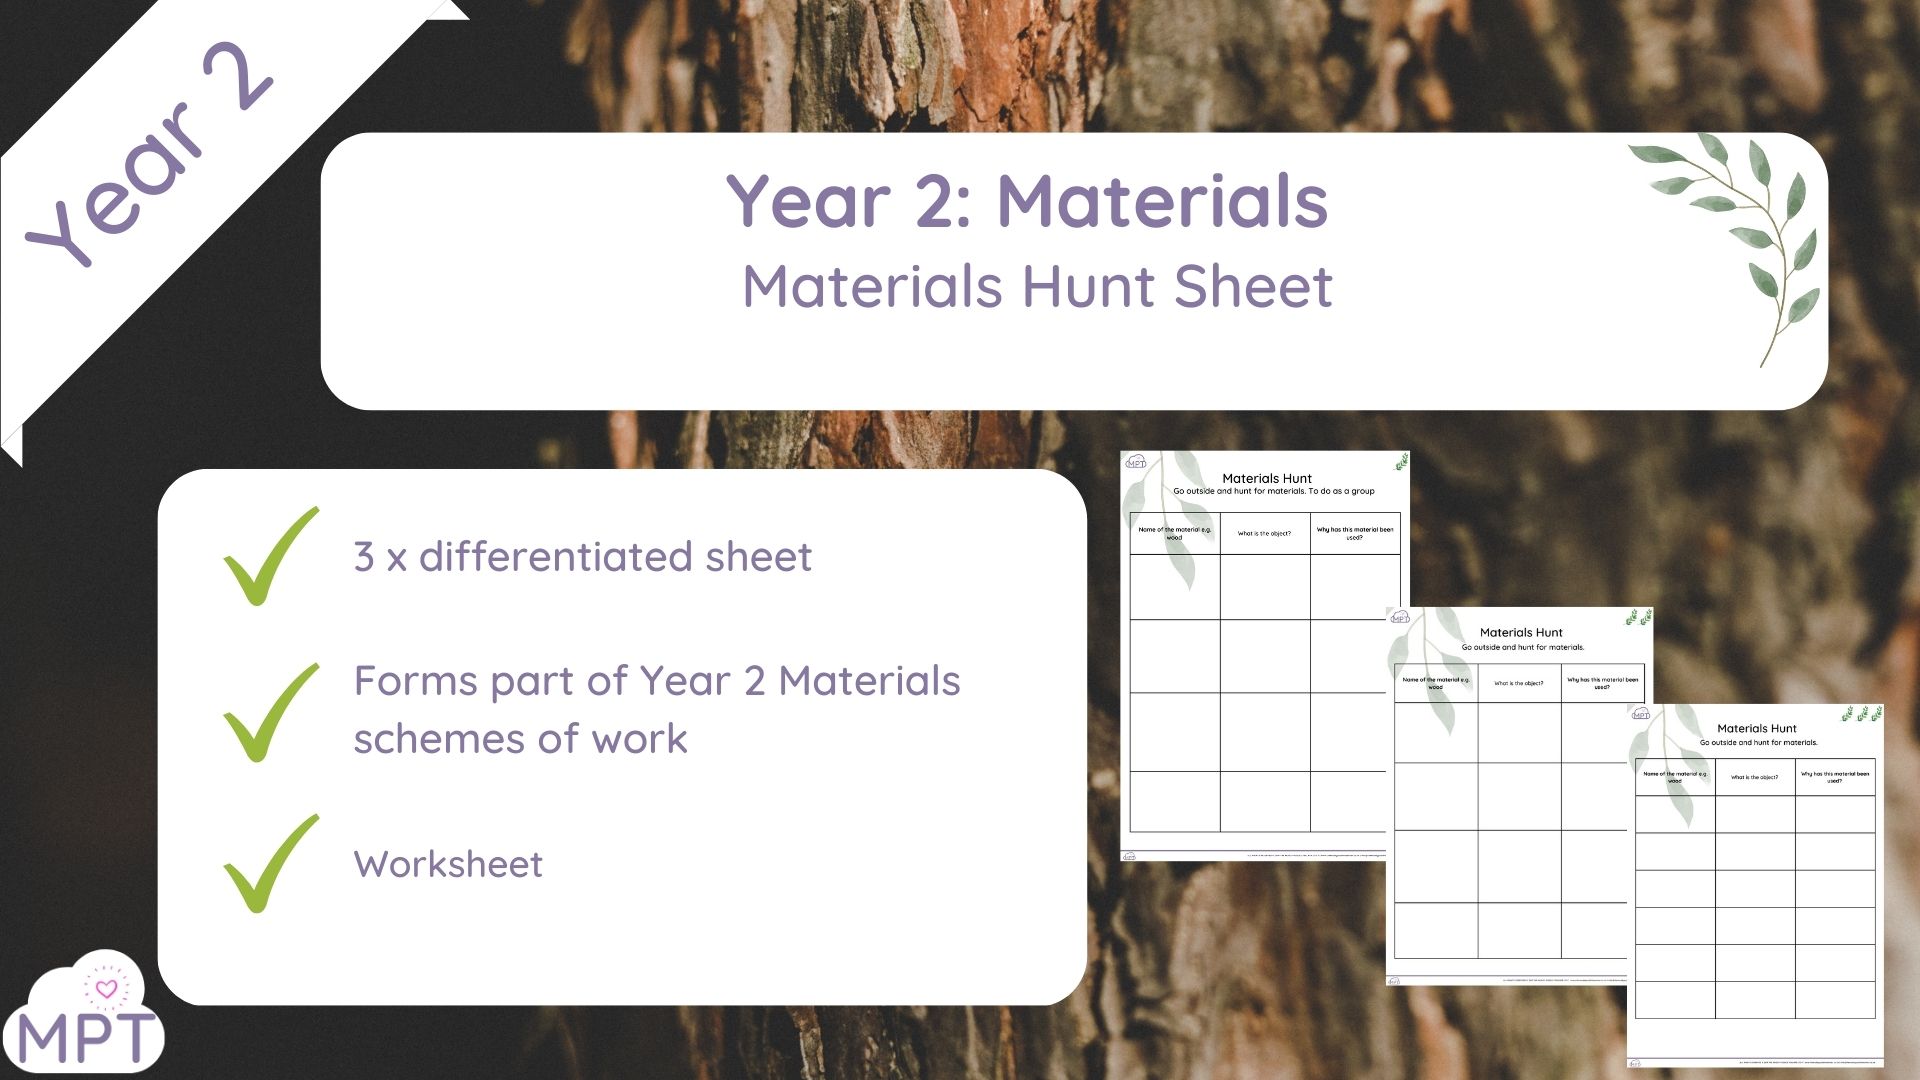 Year 1 Materials Outdoor Sheet